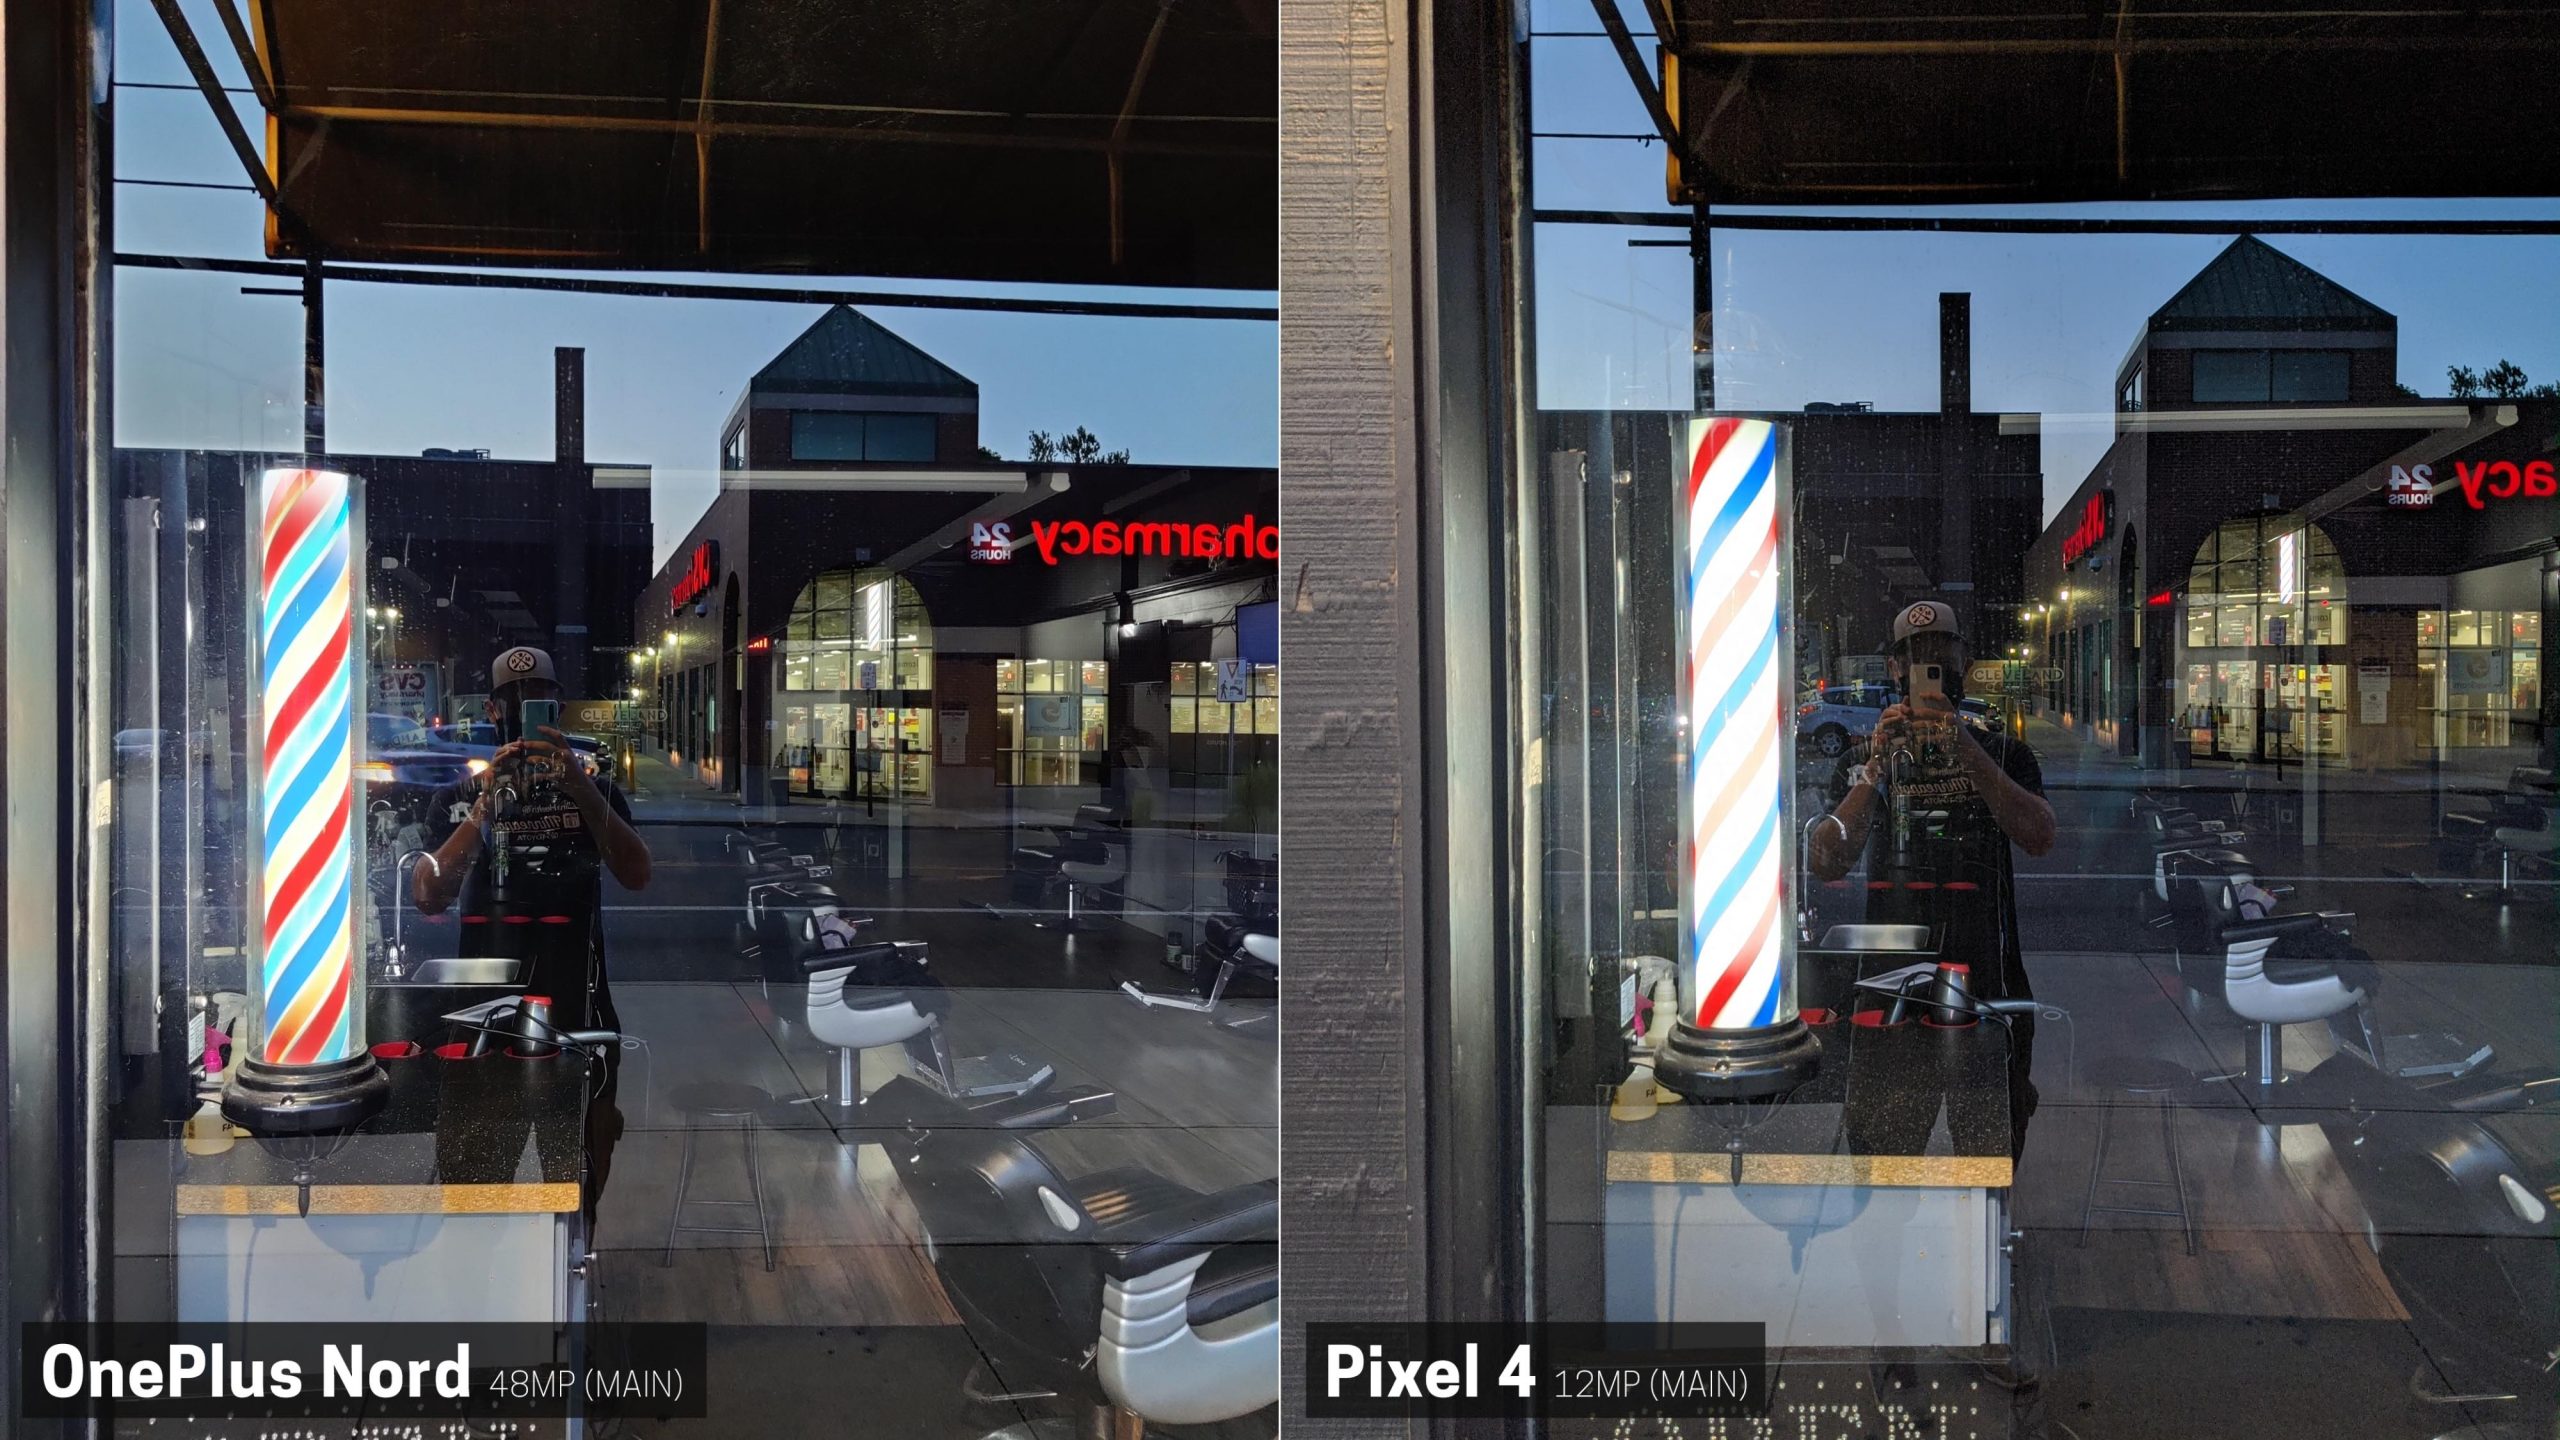 Pixel 4 melenyapkan OnePlus Nord dalam perbandingan kamera 20